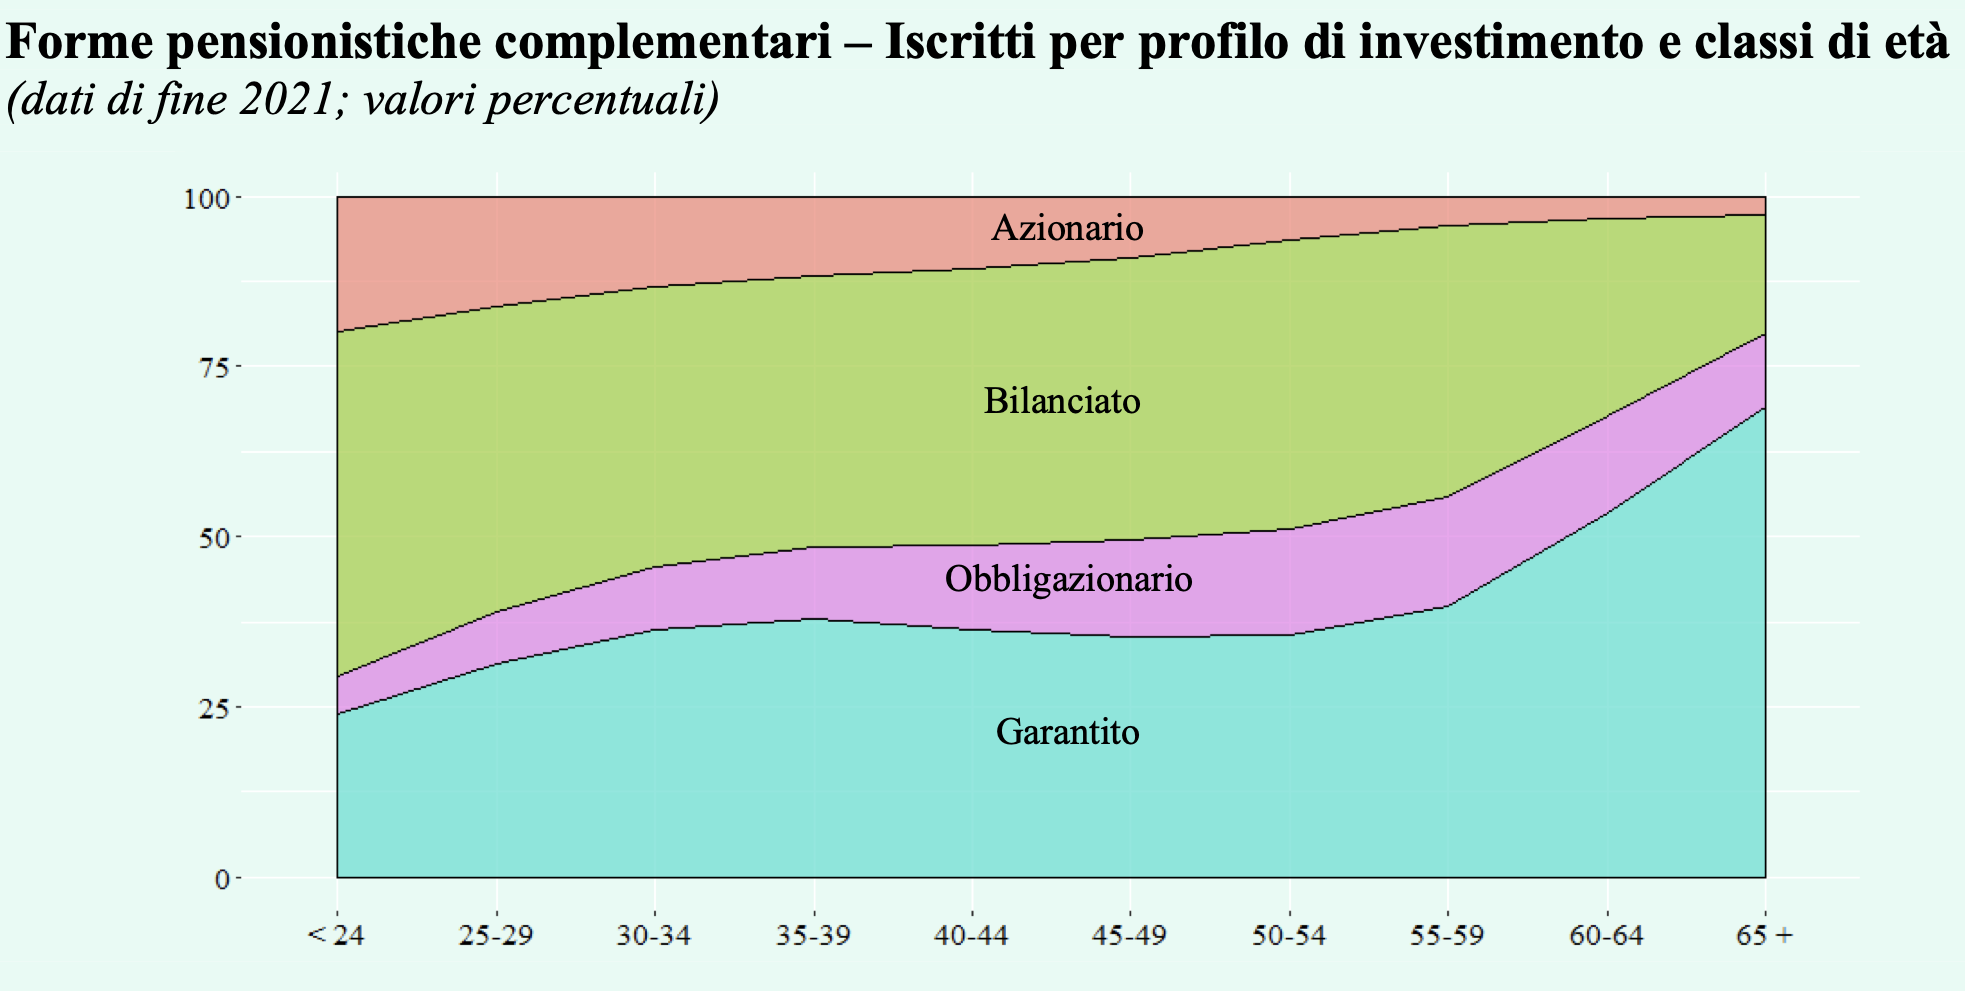 Figura 2 – Iscritti ai fondi pensione per profilo di investimento e classi di et, valori percentuali